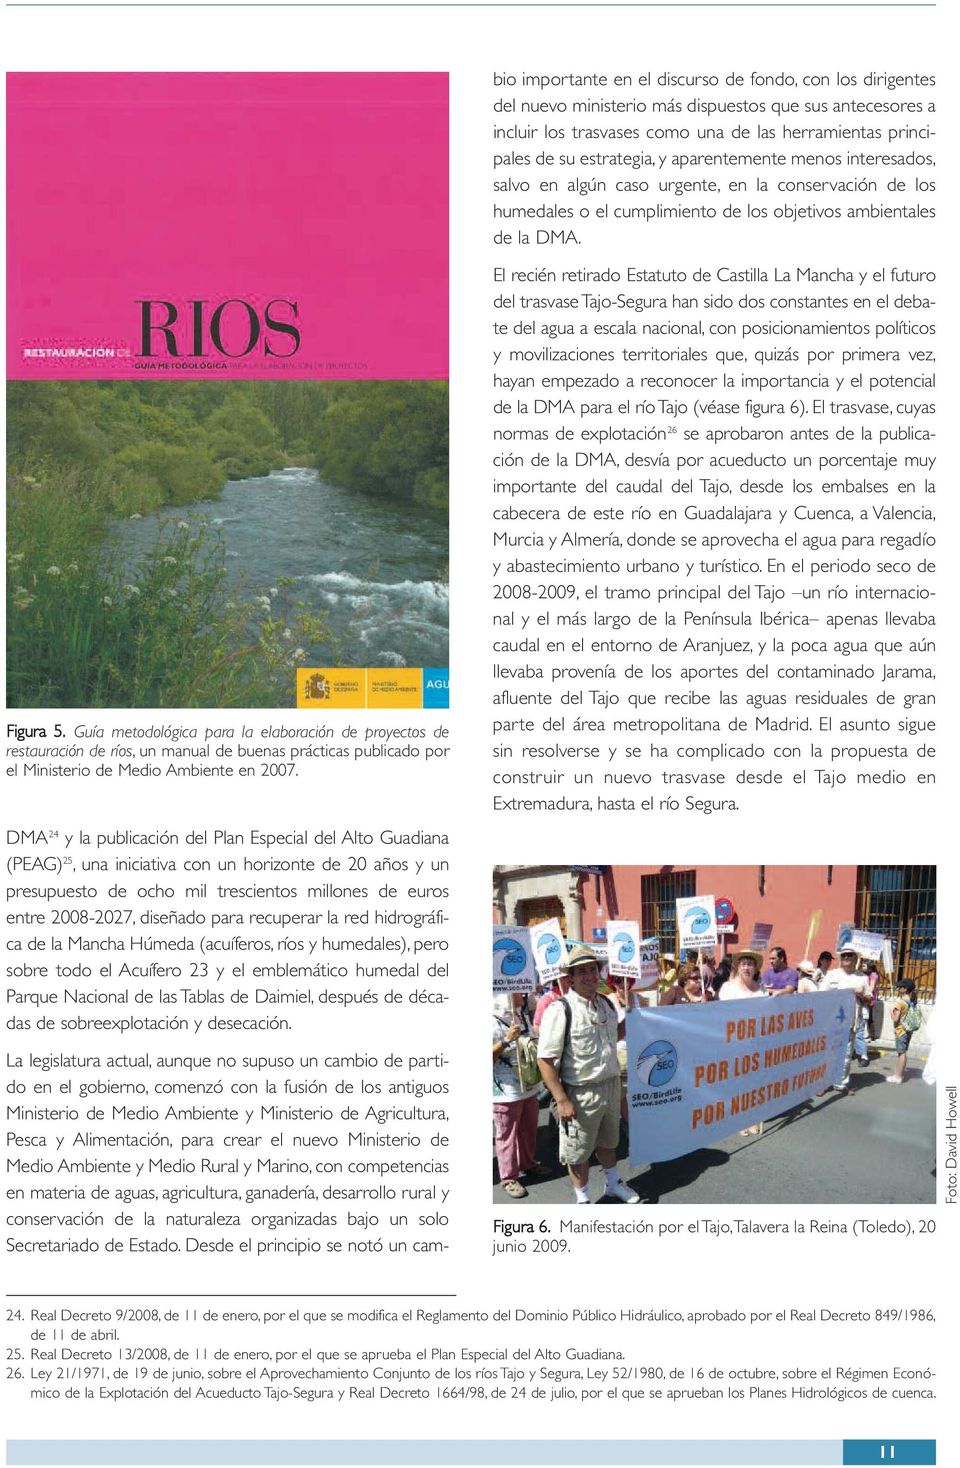 Guía metodológica para la elaboración de proyectos de restauración de ríos, un manual de buenas prácticas publicado por el Ministerio de Medio Ambiente en 2007.